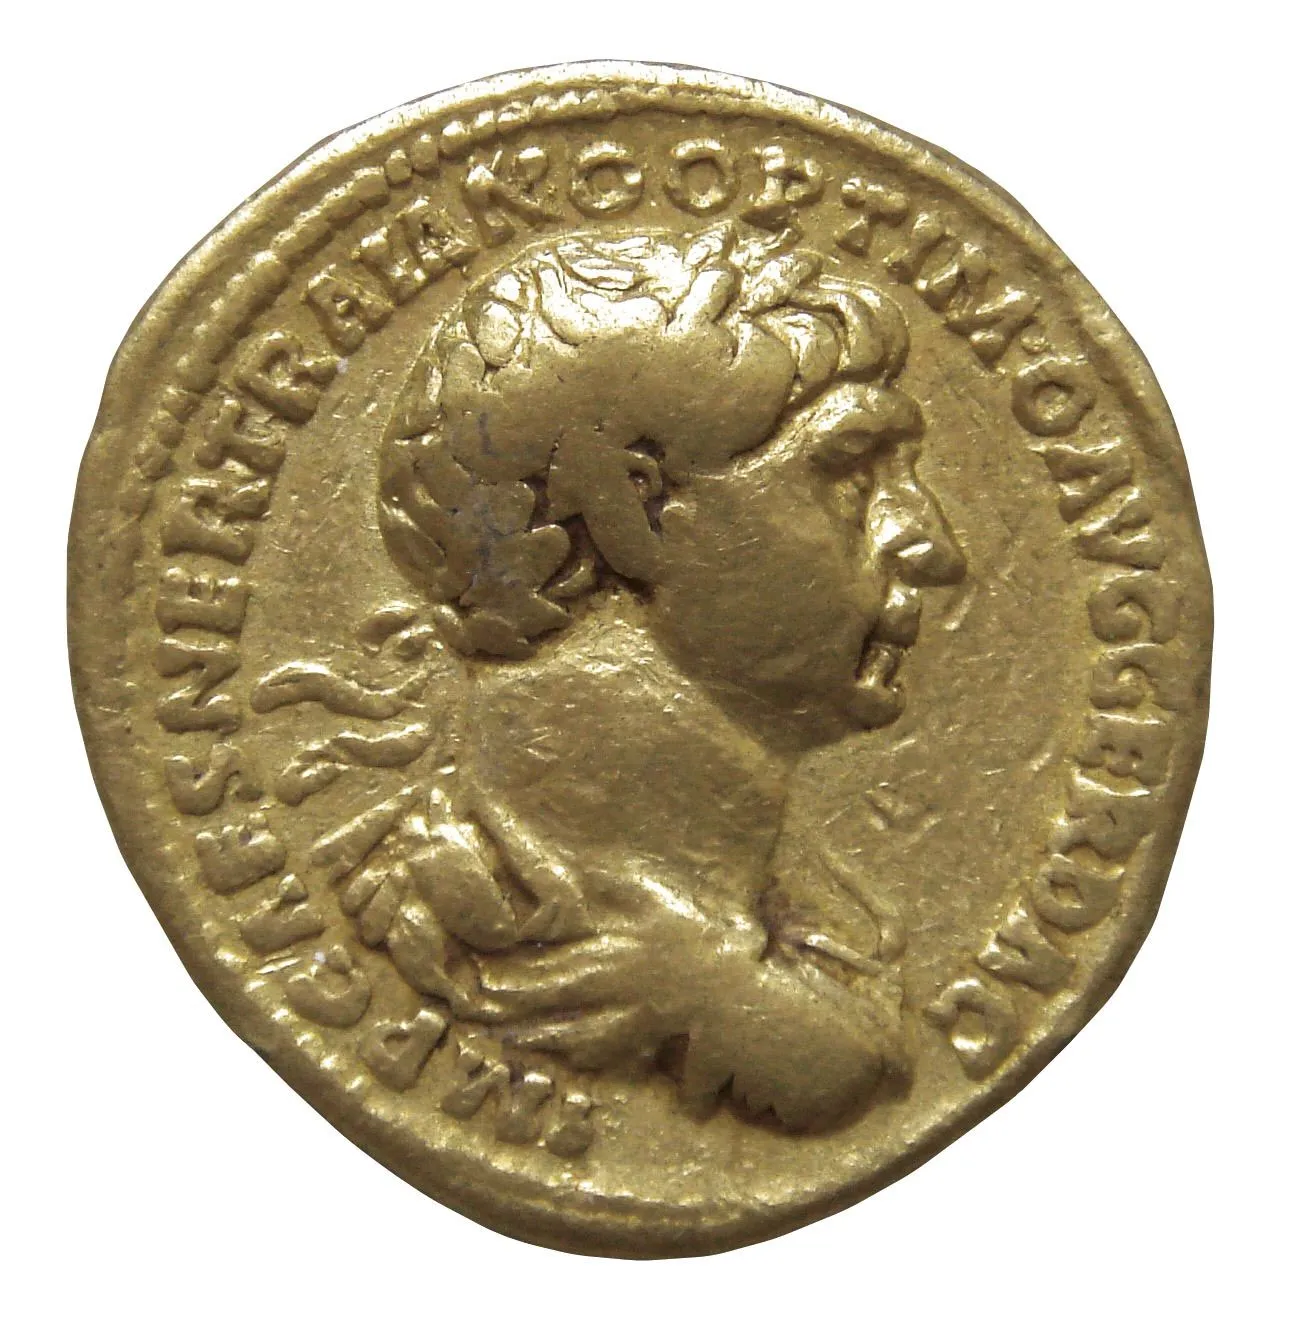 Monnaie de l'empereur romain Trajan, trouvée dans un trésor de l'empereur kouchan Kanishka, IIᵉ siècle après J.-C. (British Museum, Londres).